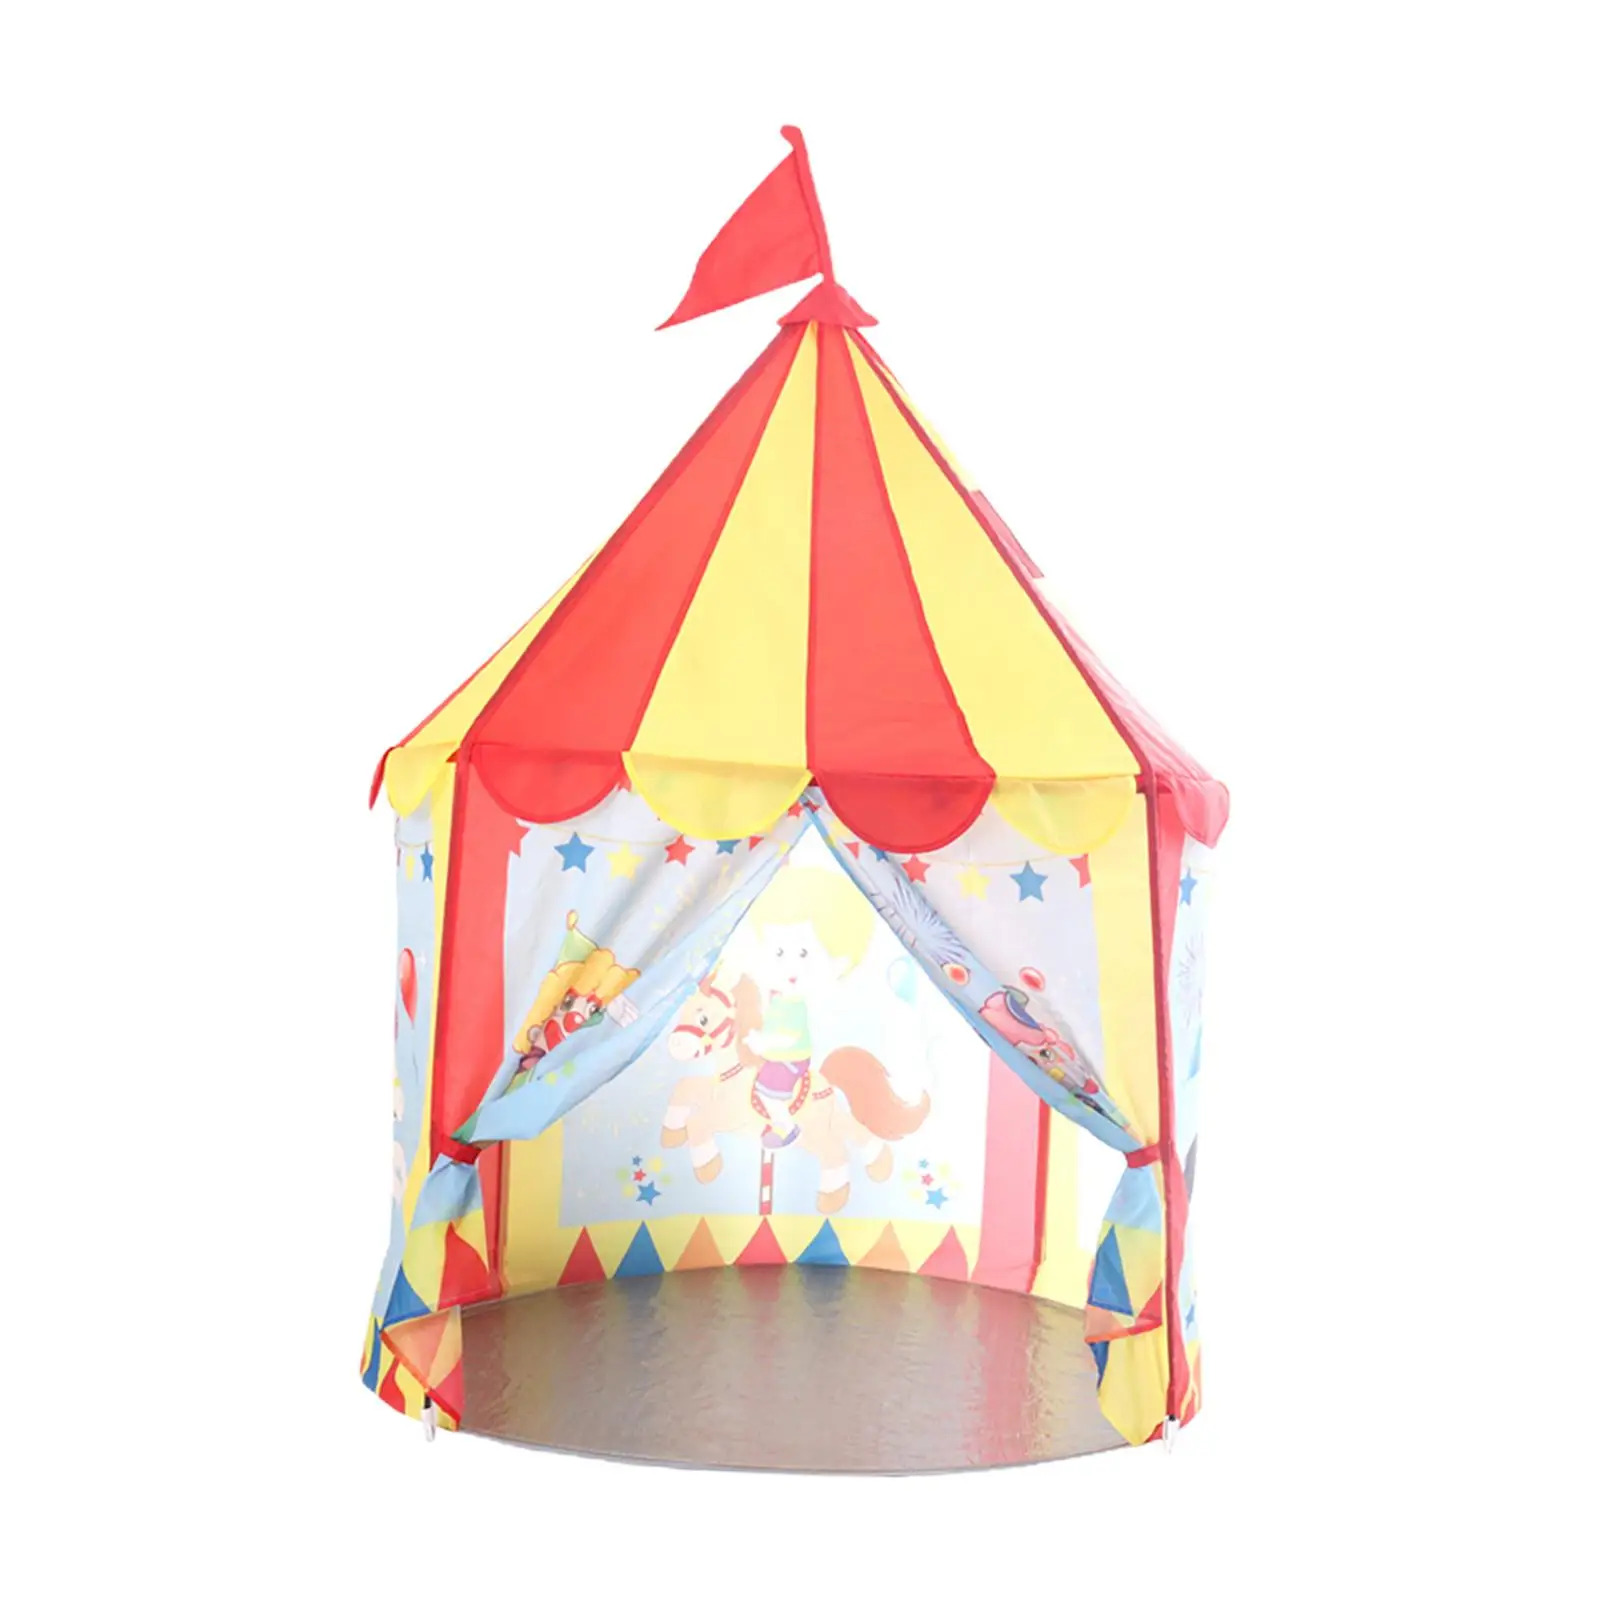 Play Tent Indoor Outdoor Tent Prince Castle Tent Children Castle Playhous for Garden Camping Yard Children